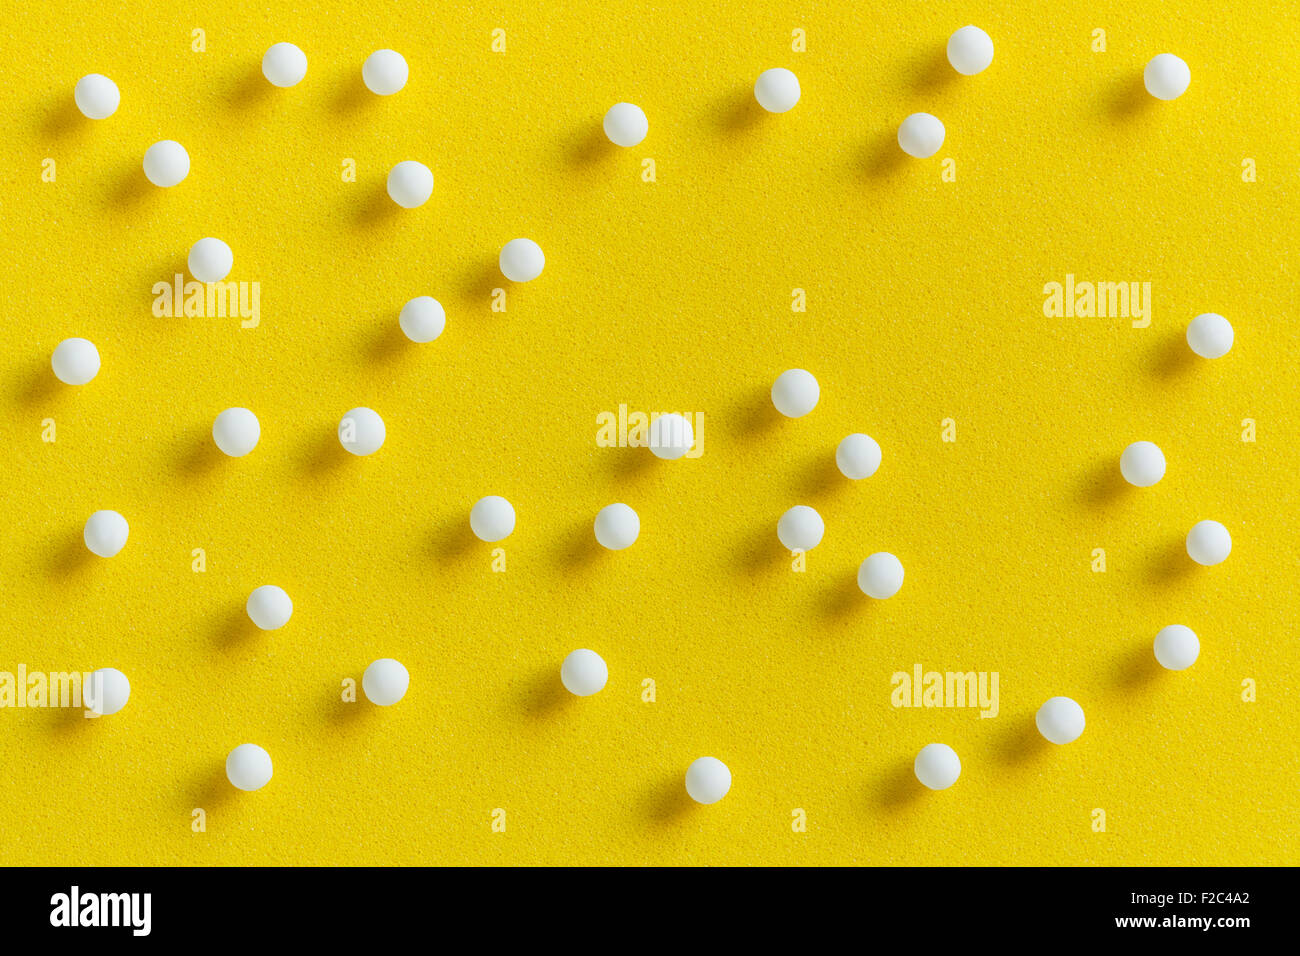 Vue aérienne de pilules homéopathiques (fait à partir de la matière inerte - sucre/lactose) dispersés sur une surface jaune. Banque D'Images